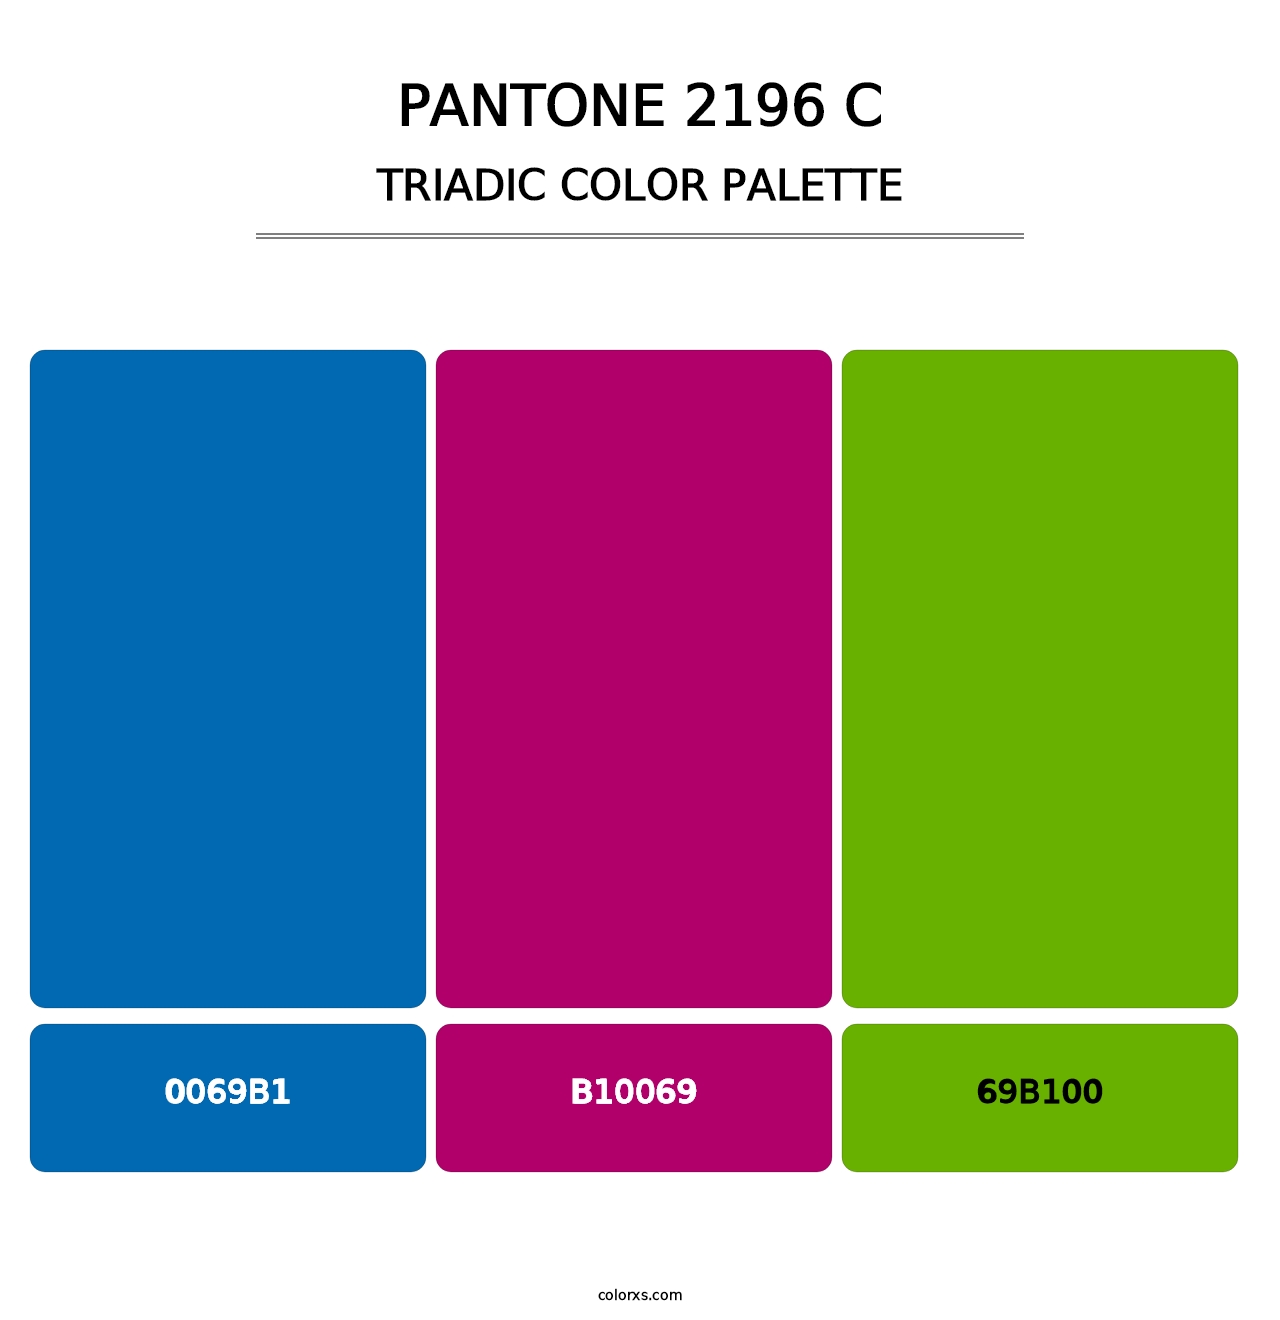 PANTONE 2196 C - Triadic Color Palette